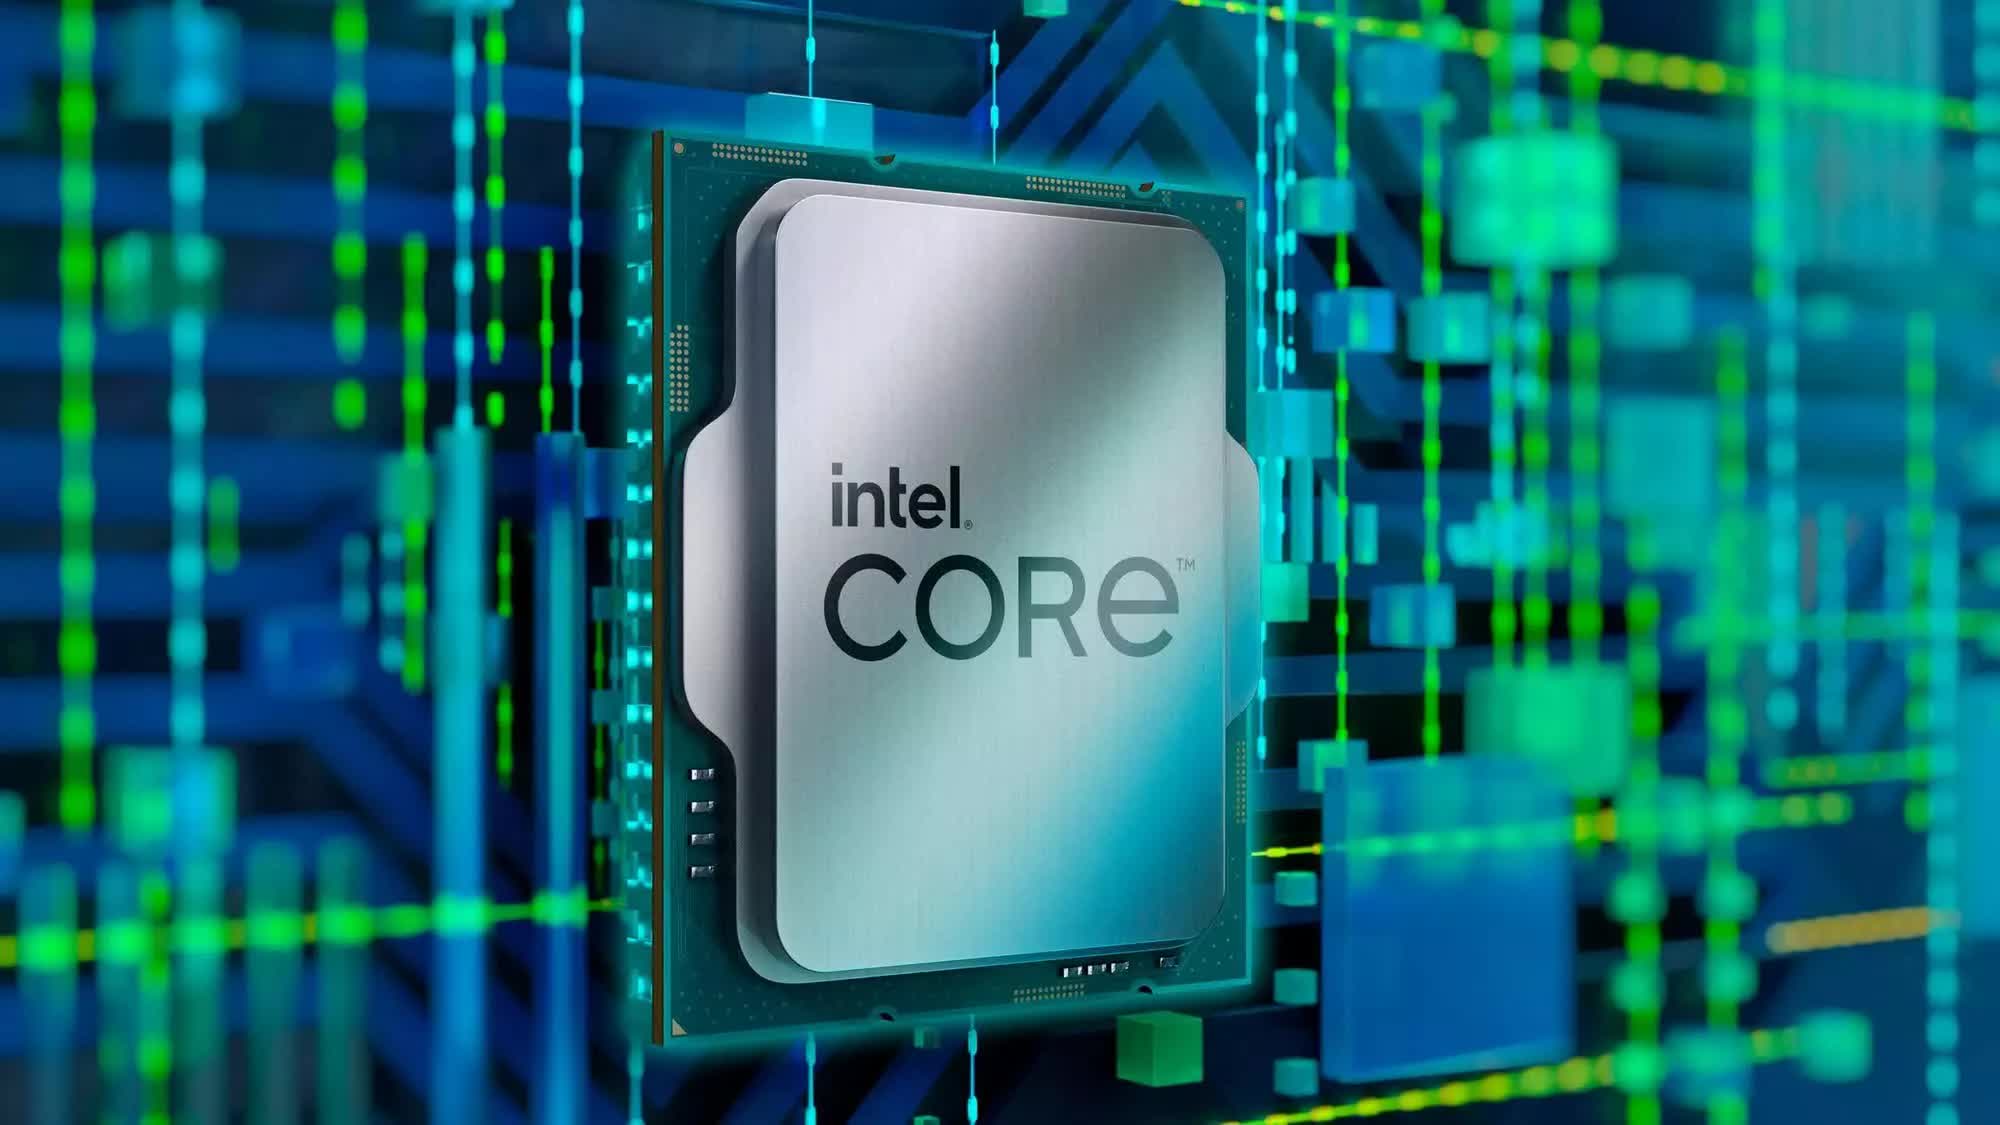 Intel confirma los detalles de iGPU y los nodos de proceso para Arrow Lake y Lunar Lake